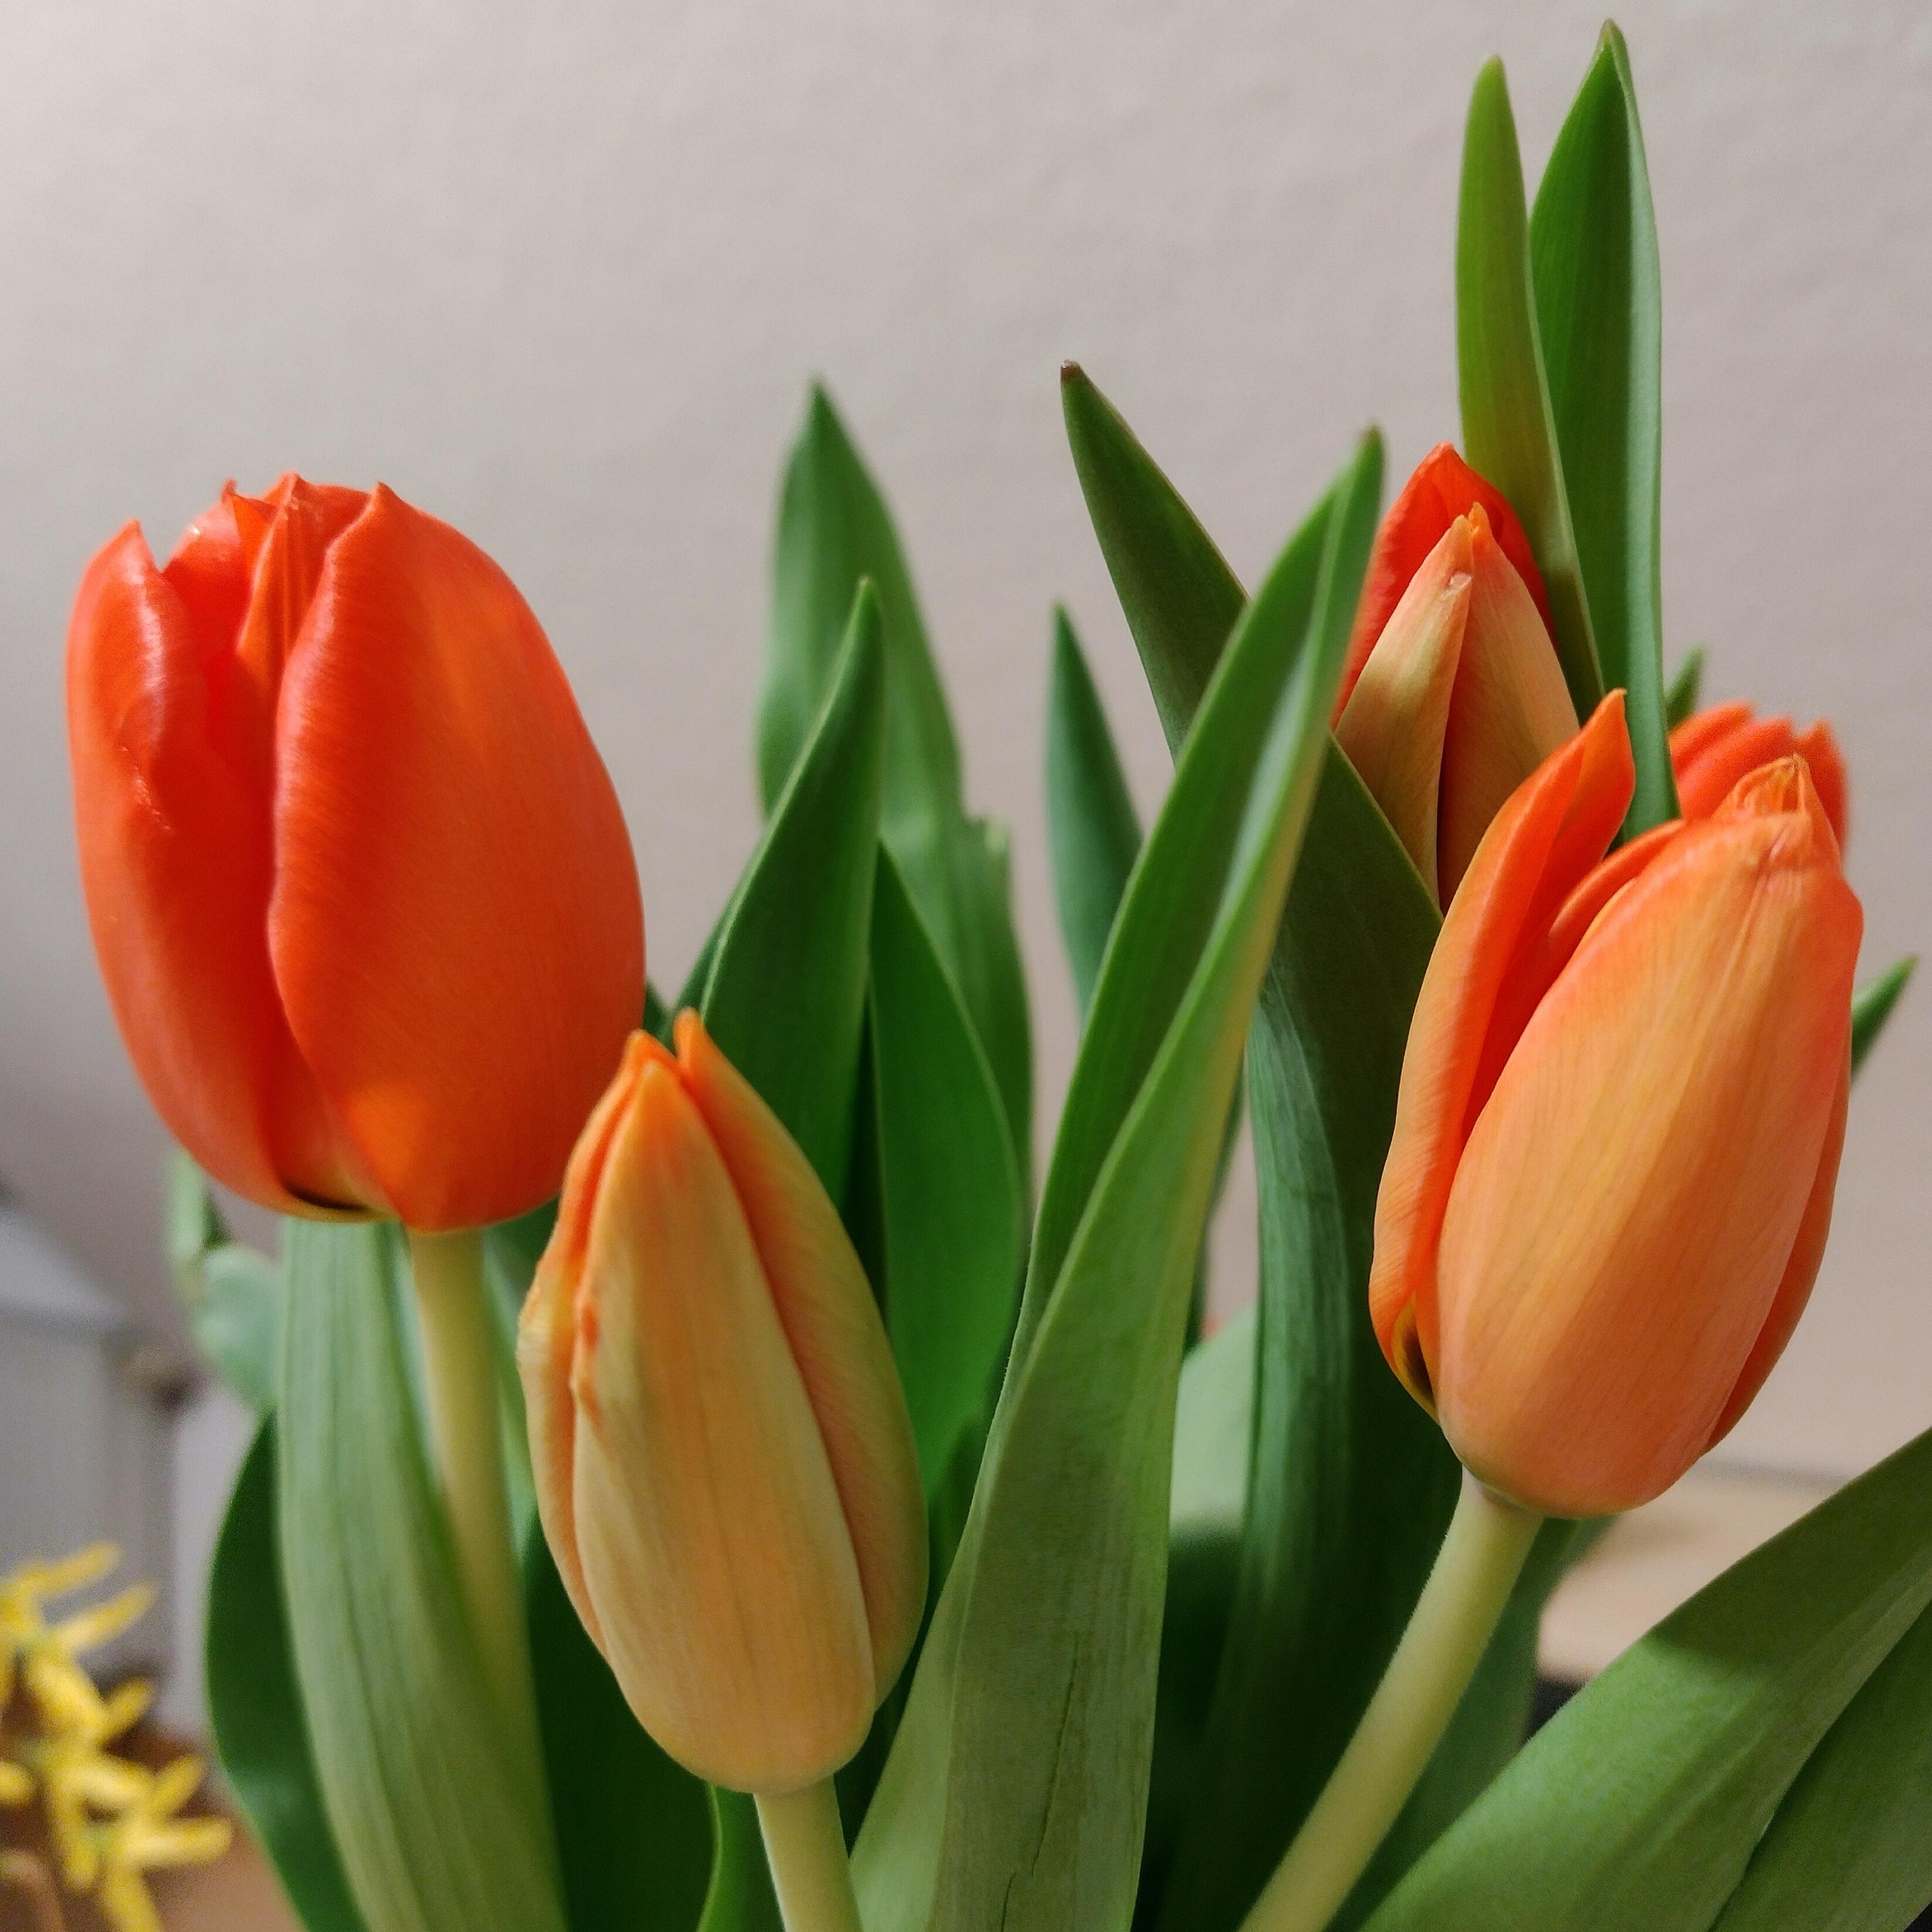 #frischeblumen #freshflowers #tulpen #orange